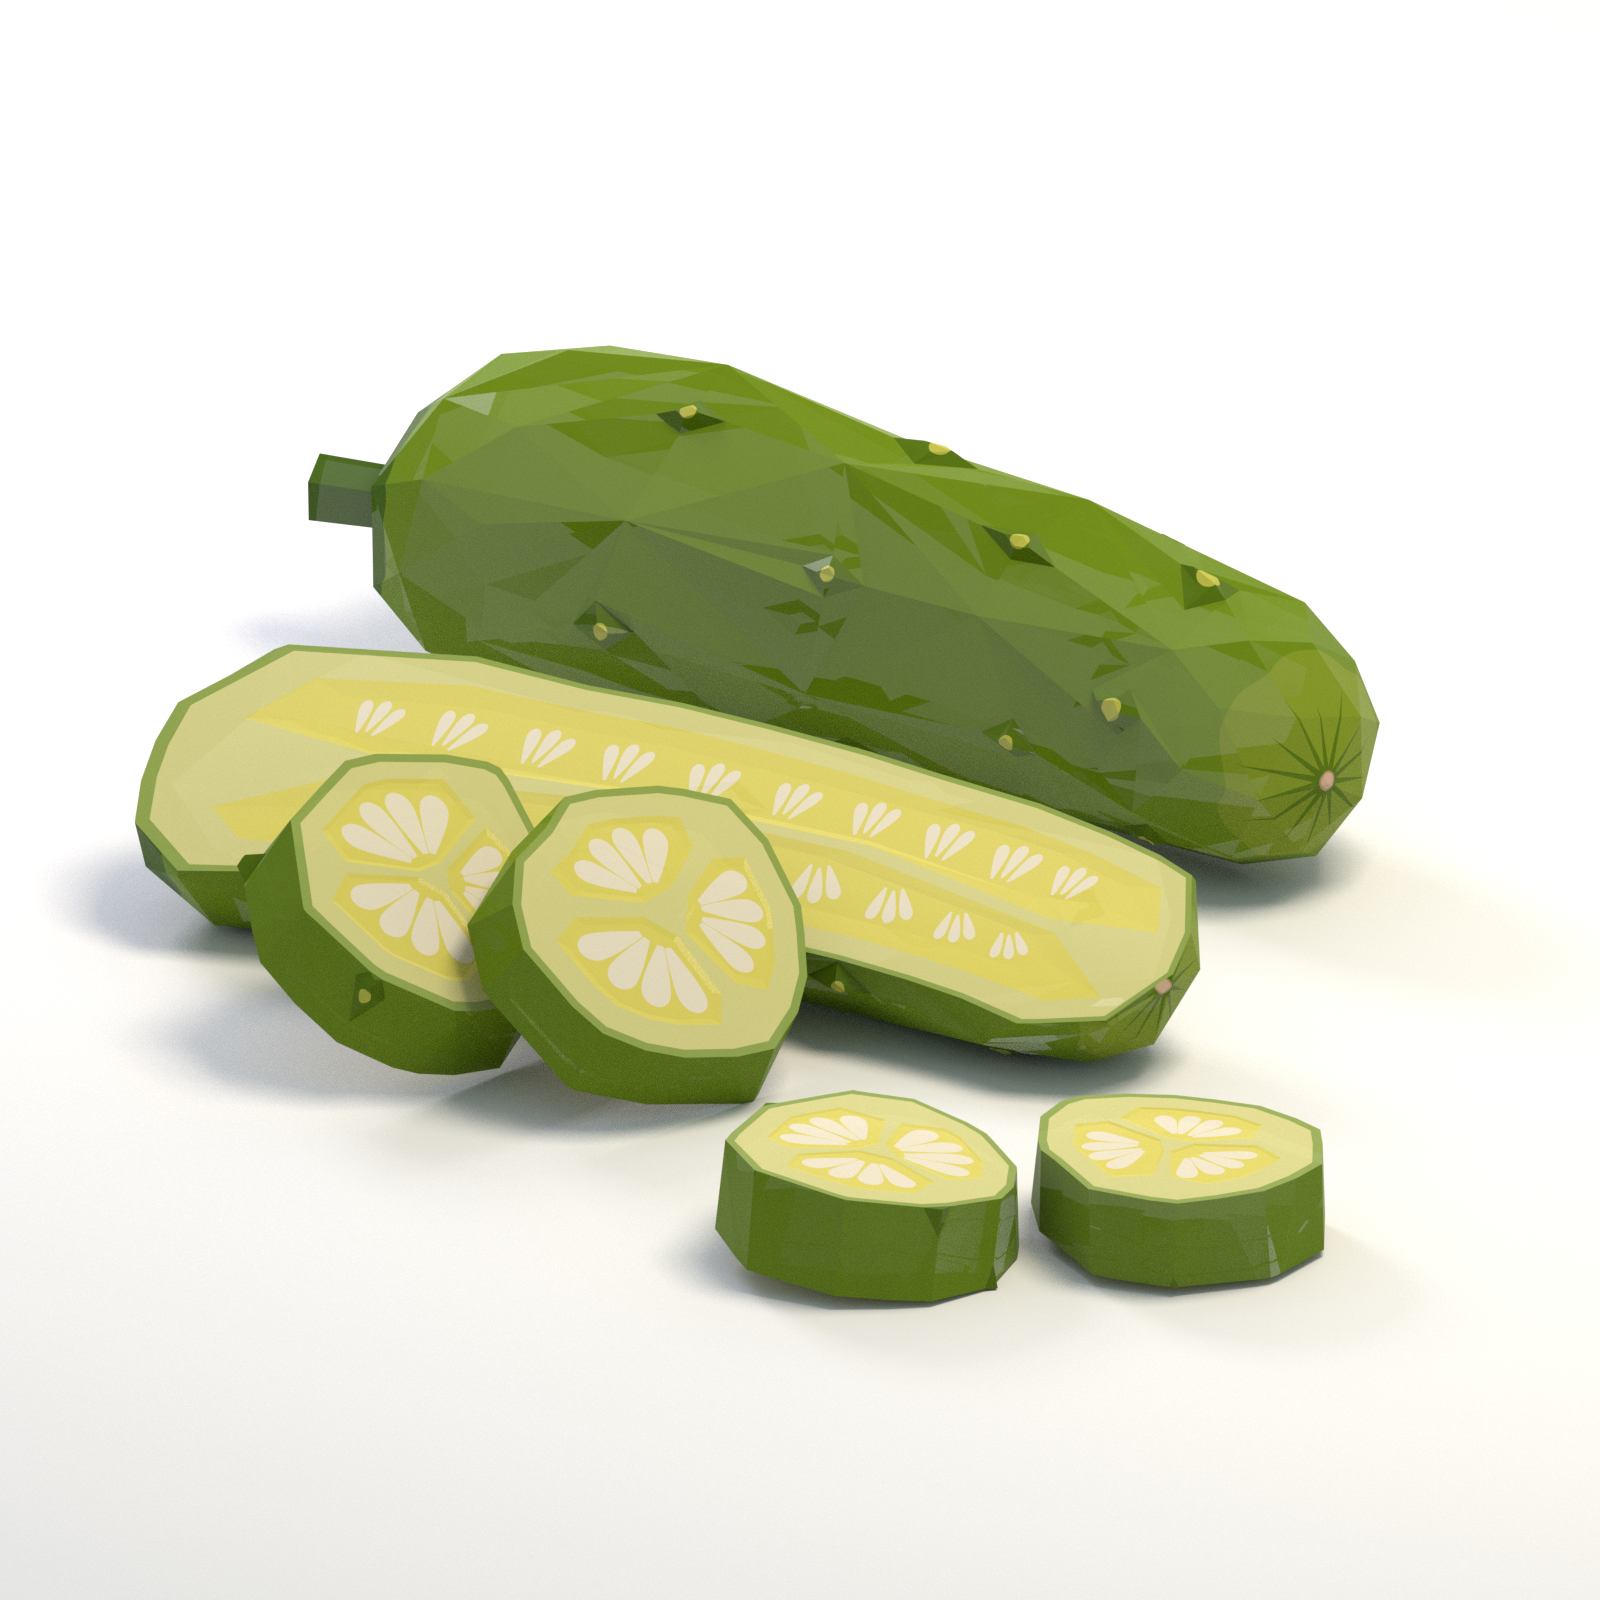 Cucumber cartoon 3D model - TurboSquid 1447071